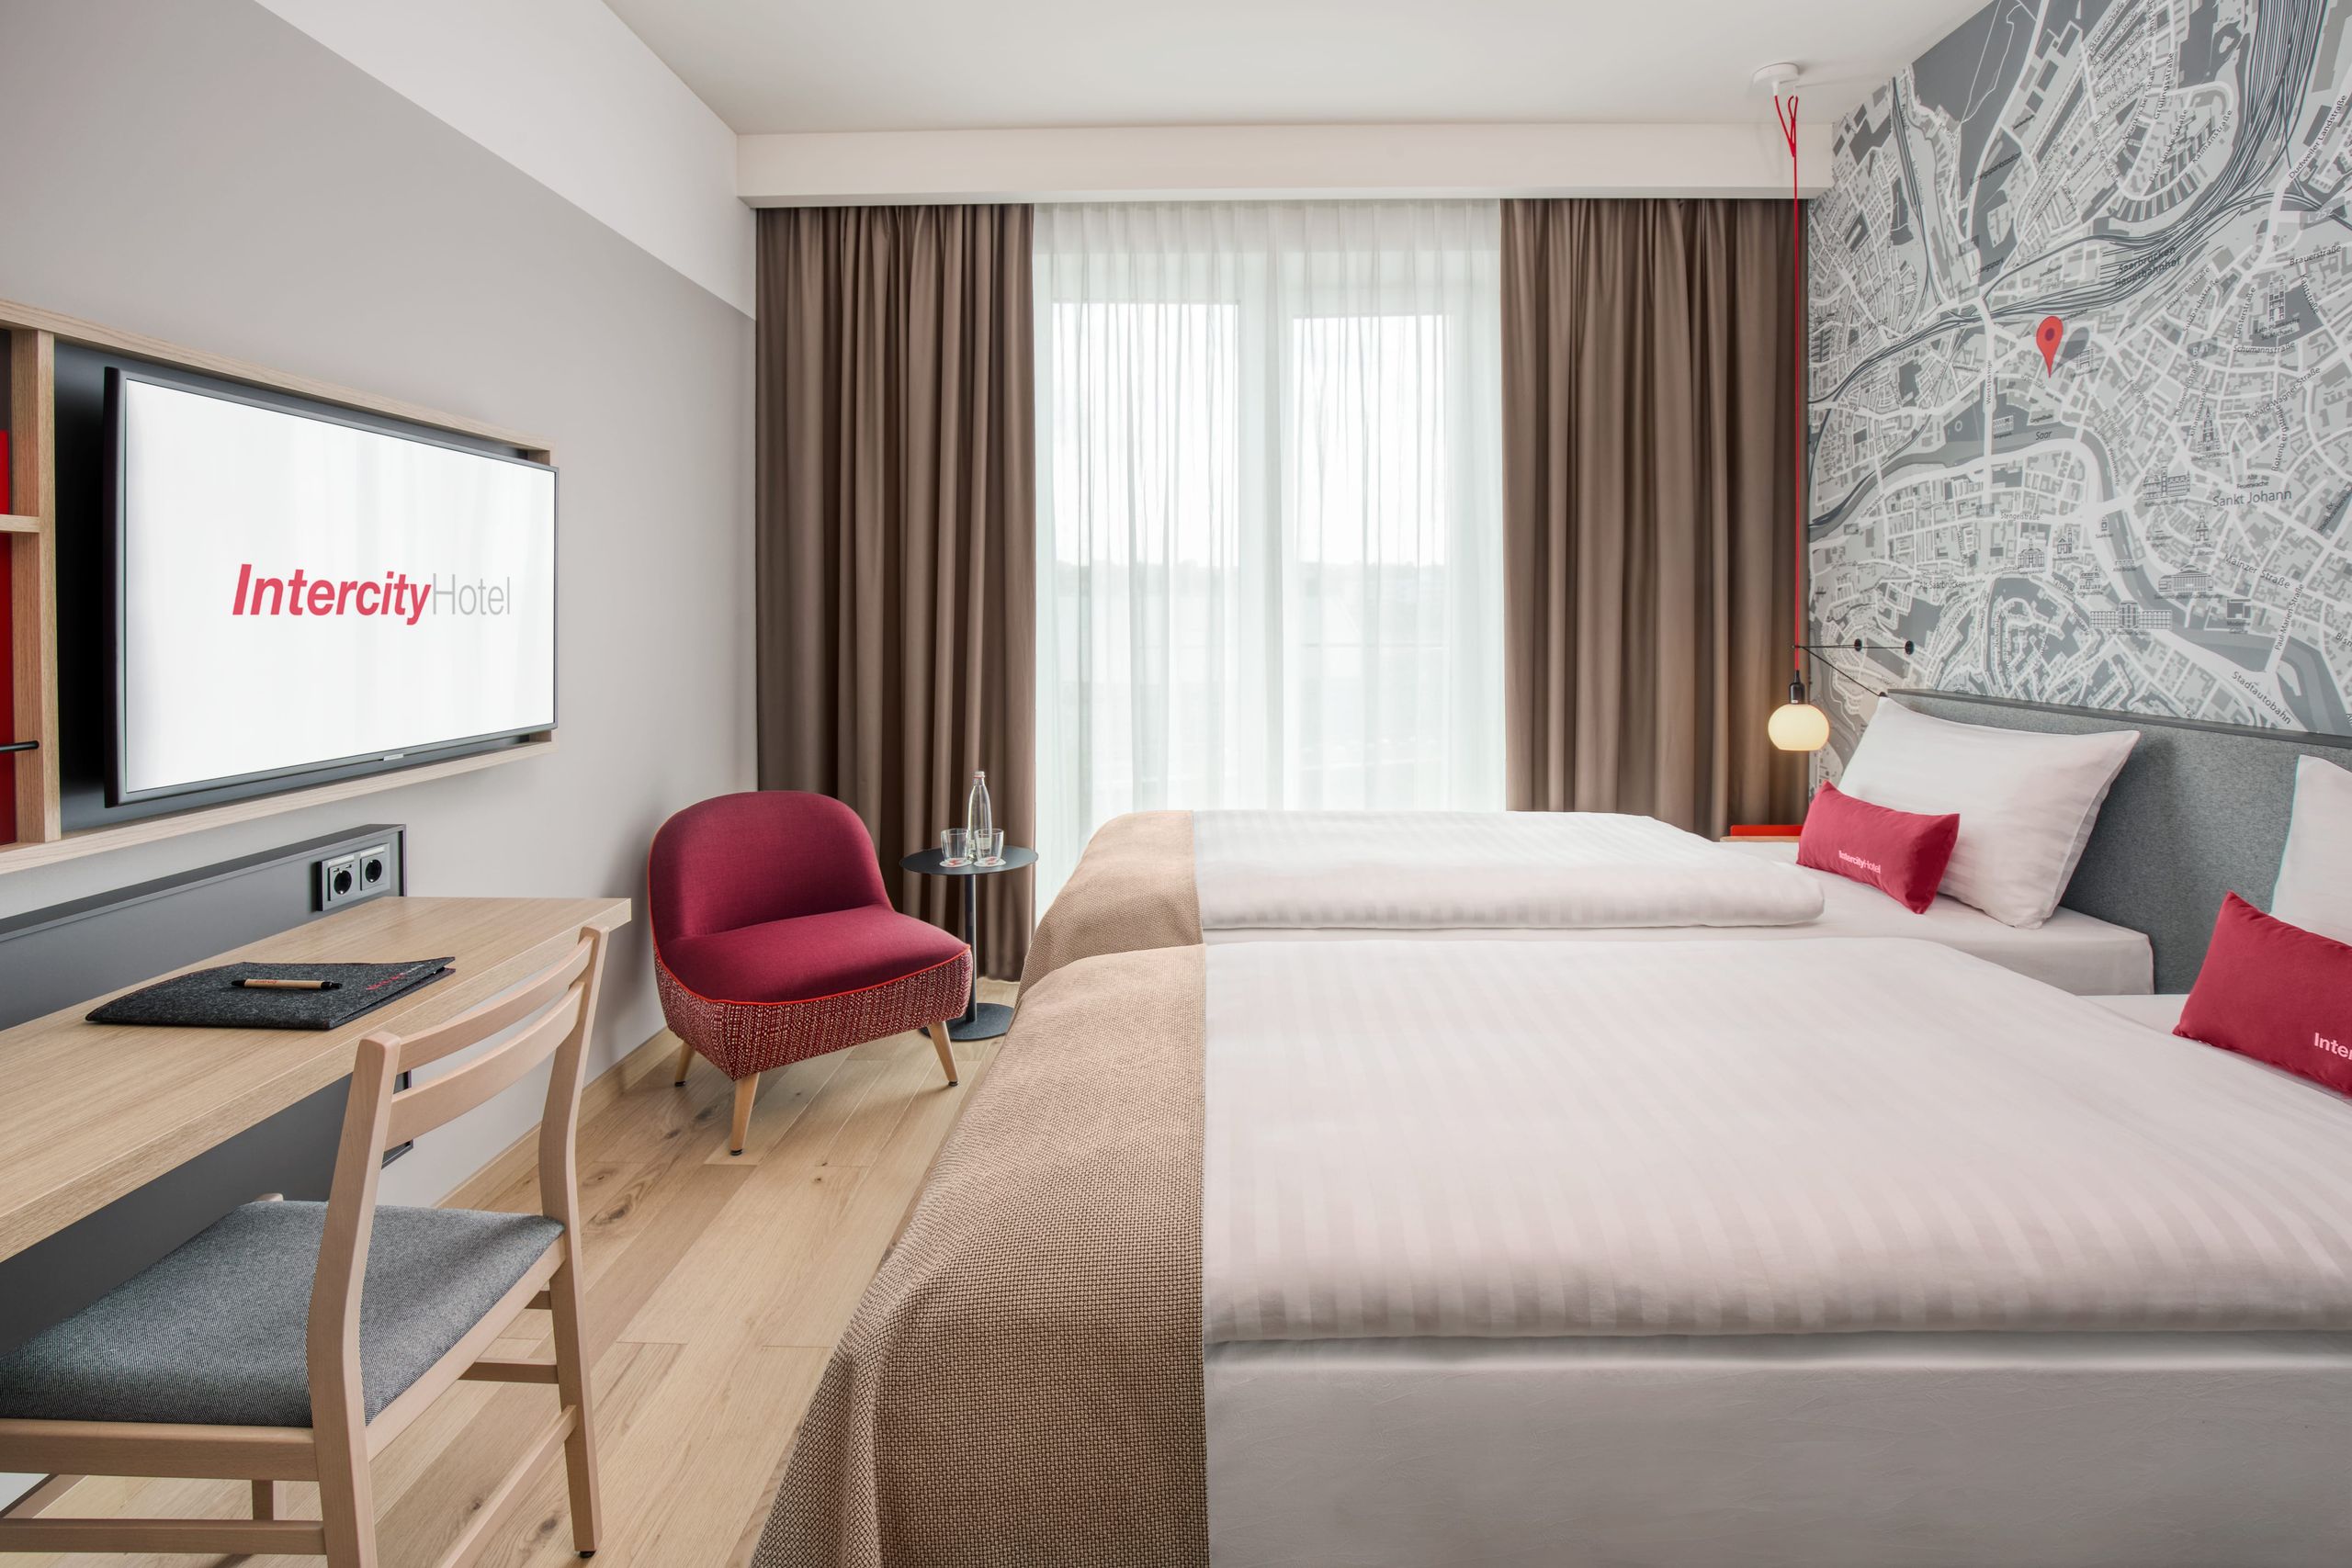 Hotel em Saarbrücken | IntercityHotel Saarbrücken - Quartos de negócios com camas separadas